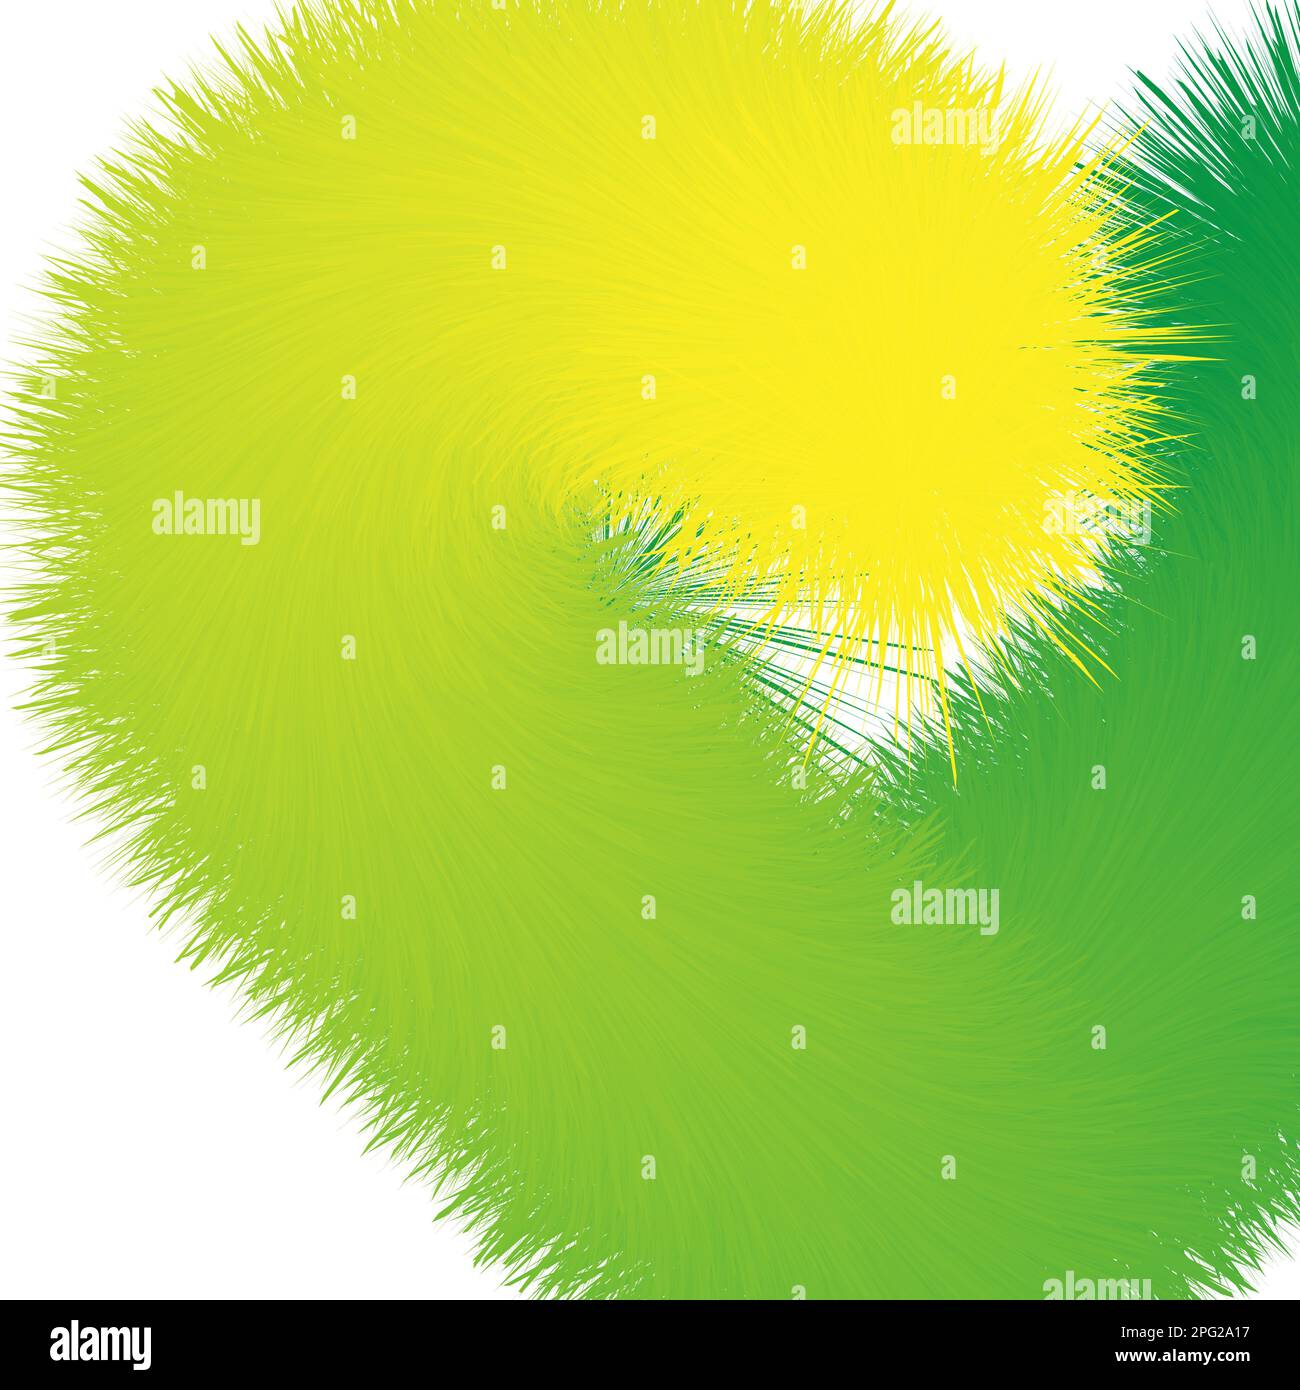 Frühling-Sommer-Hintergrund, das Konzept von Gras, Grün, Blüte. Mit Platz für Text, Banner für soziale Netzwerke, Werbung, Marketing Stock Vektor